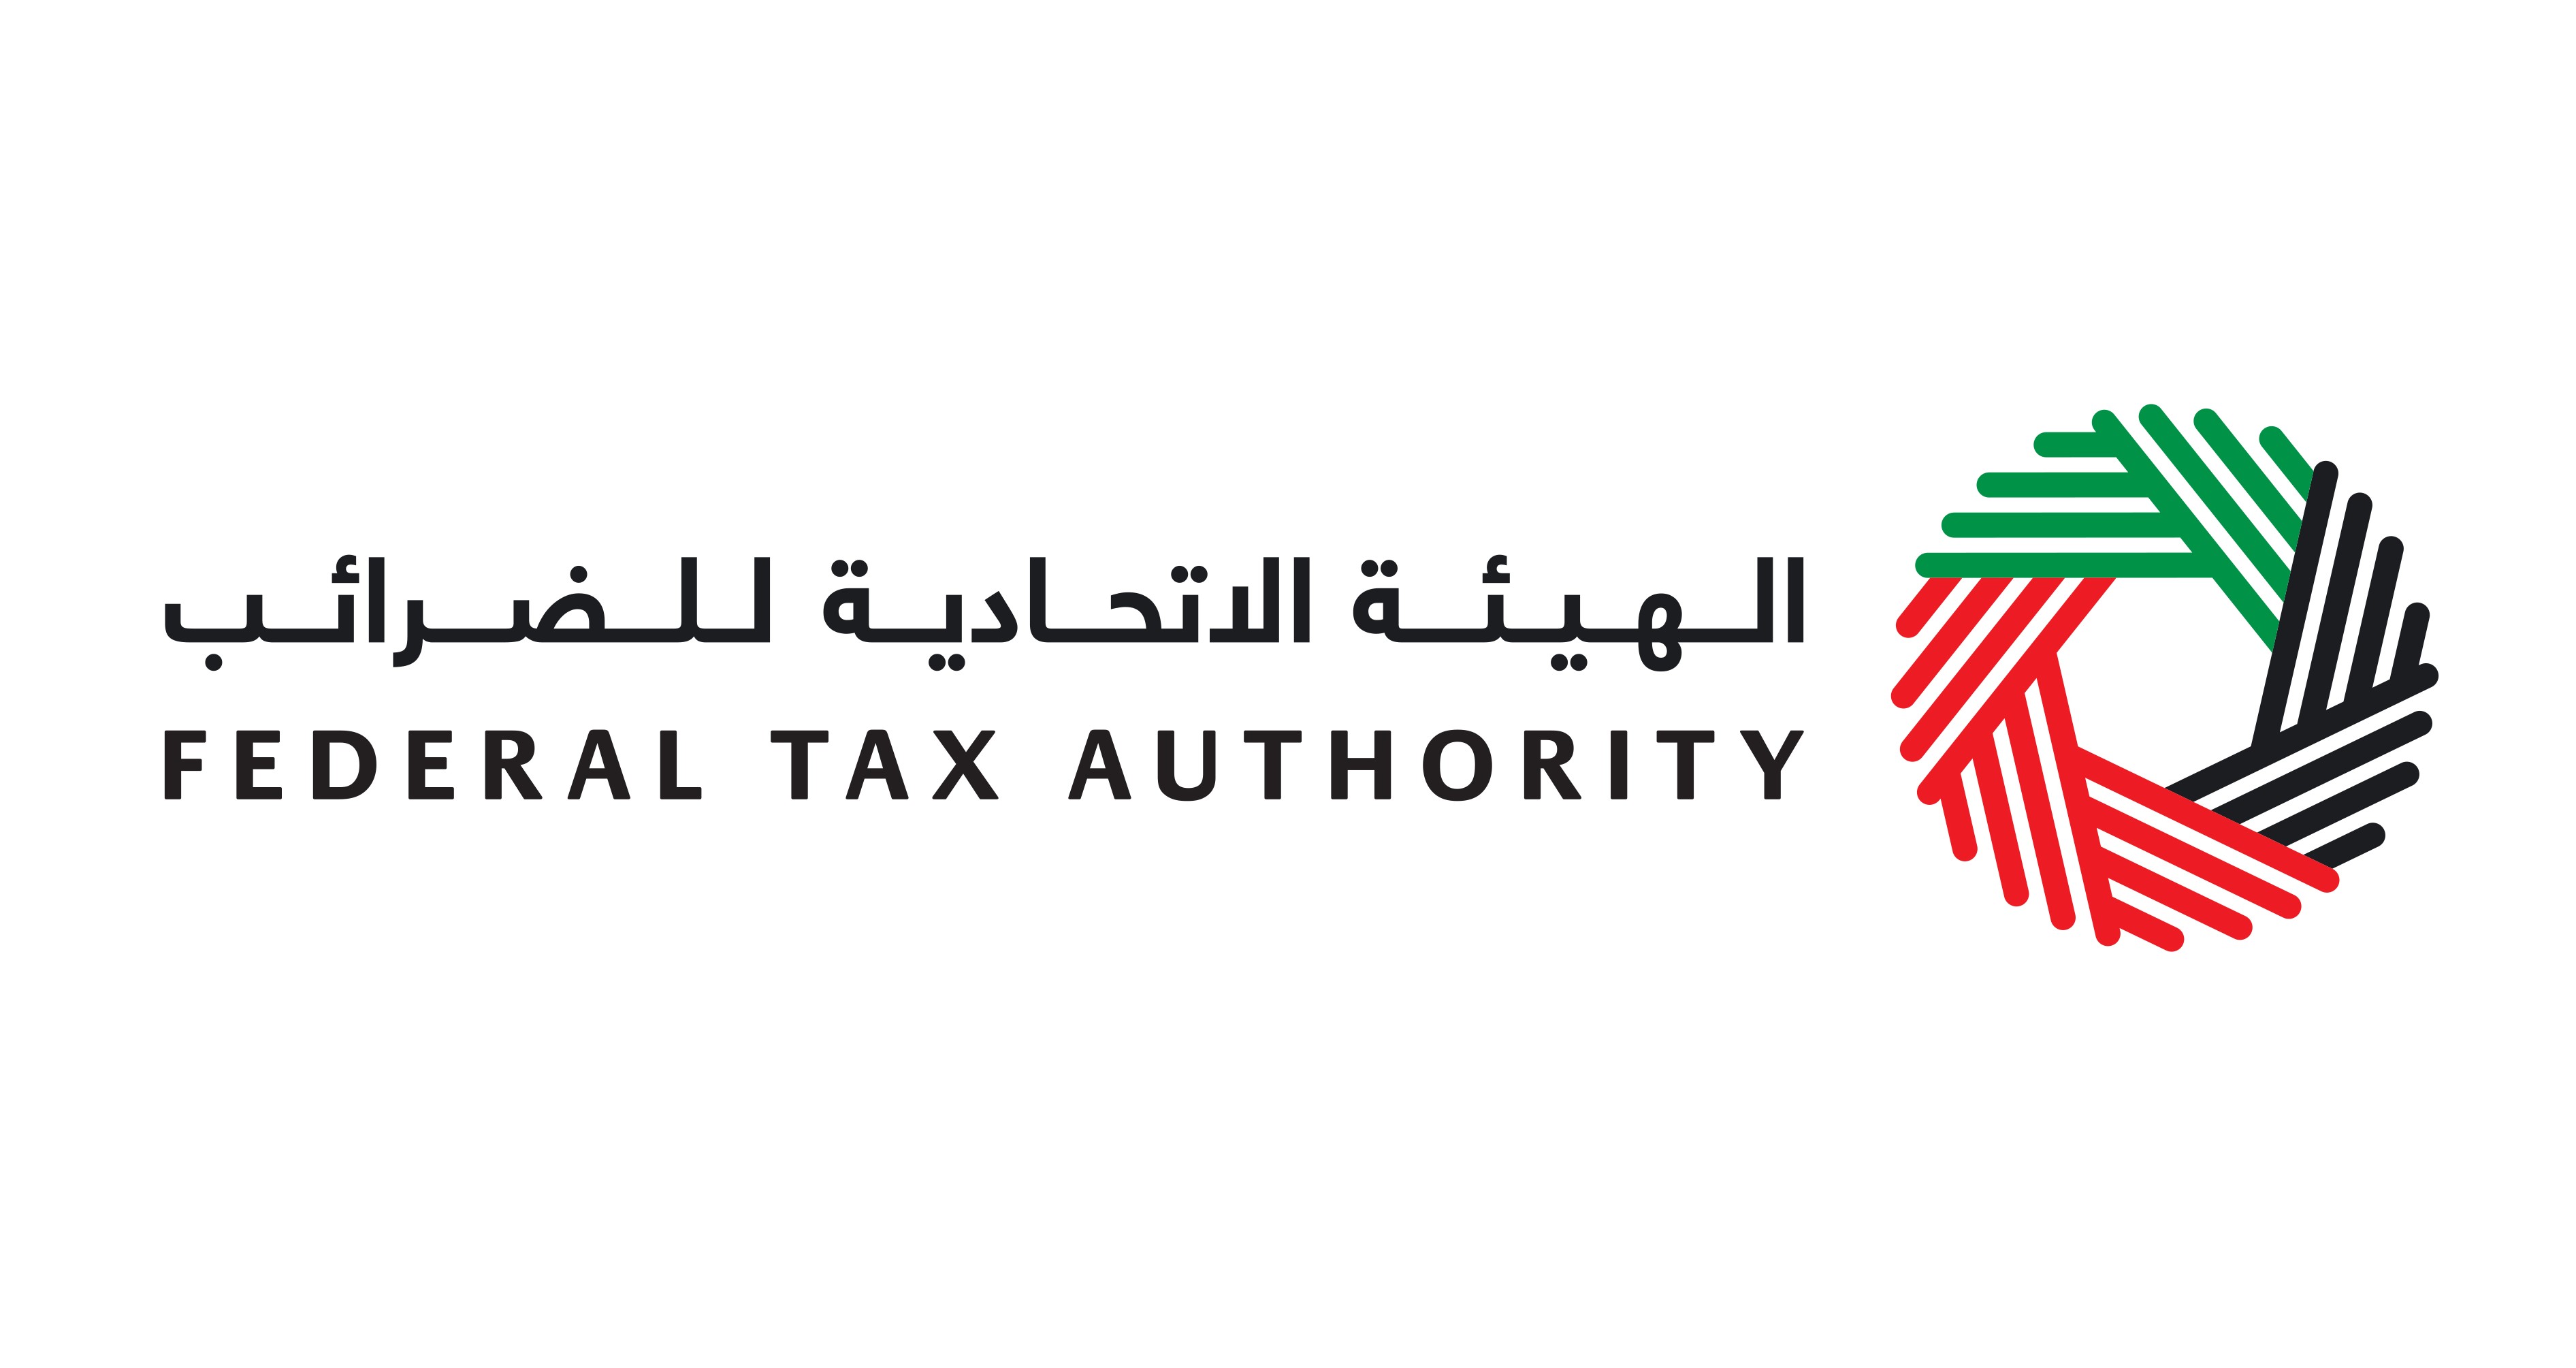 Федеральная налоговая служба ОАЭ опубликовала руководство по налогообложению физических лиц